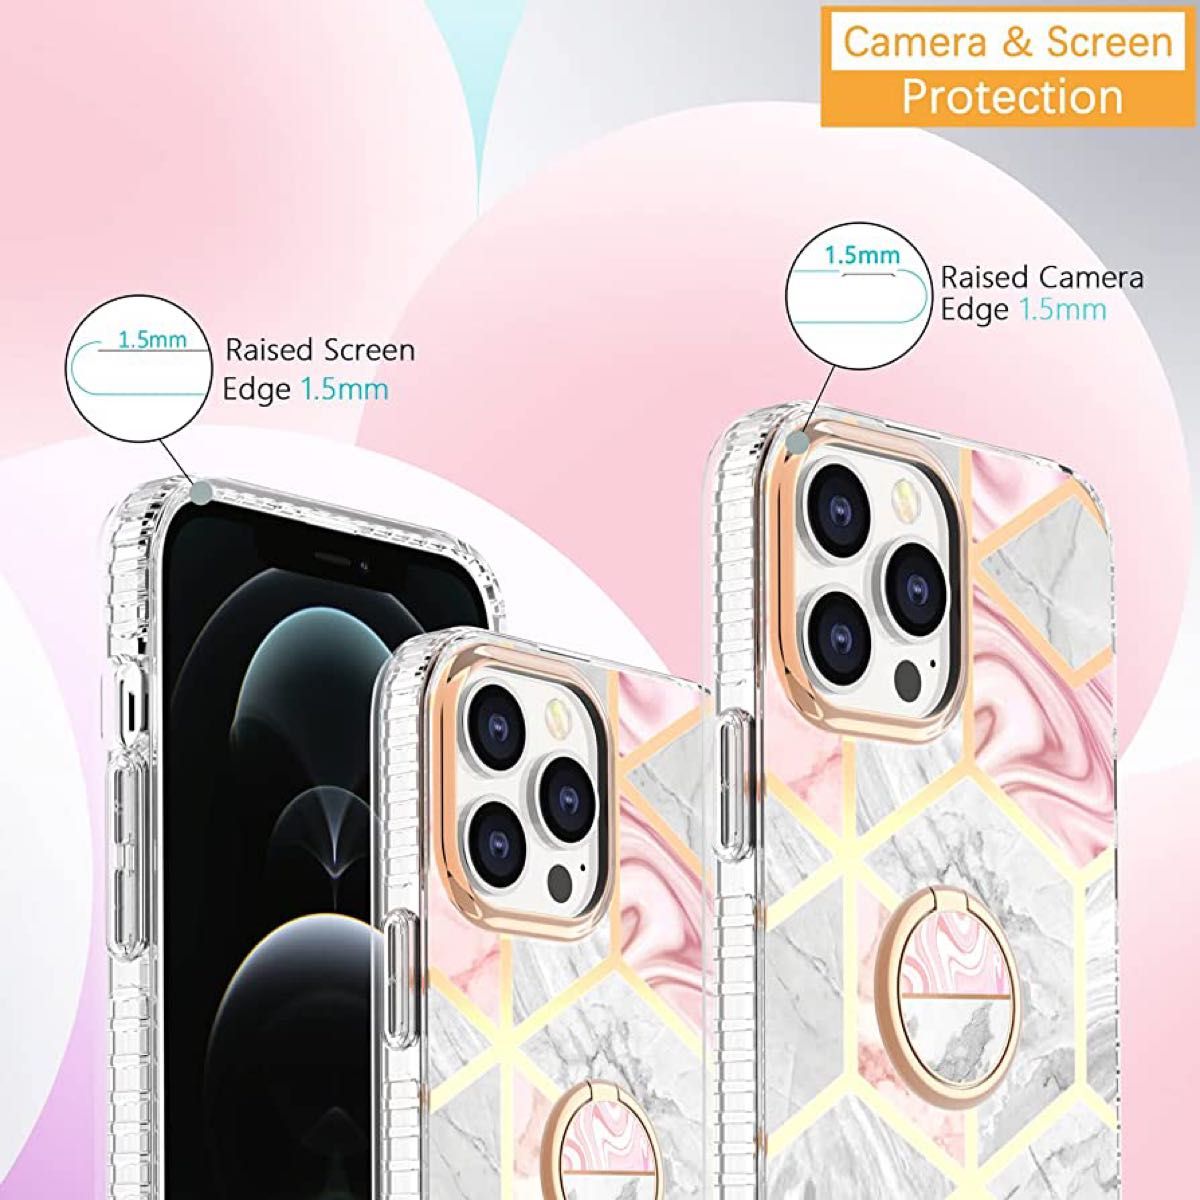 iPhone 13Pro iPhoneケース　スマホケース　スマホリング付き　ピンクベース　ホワイト　ゴールド